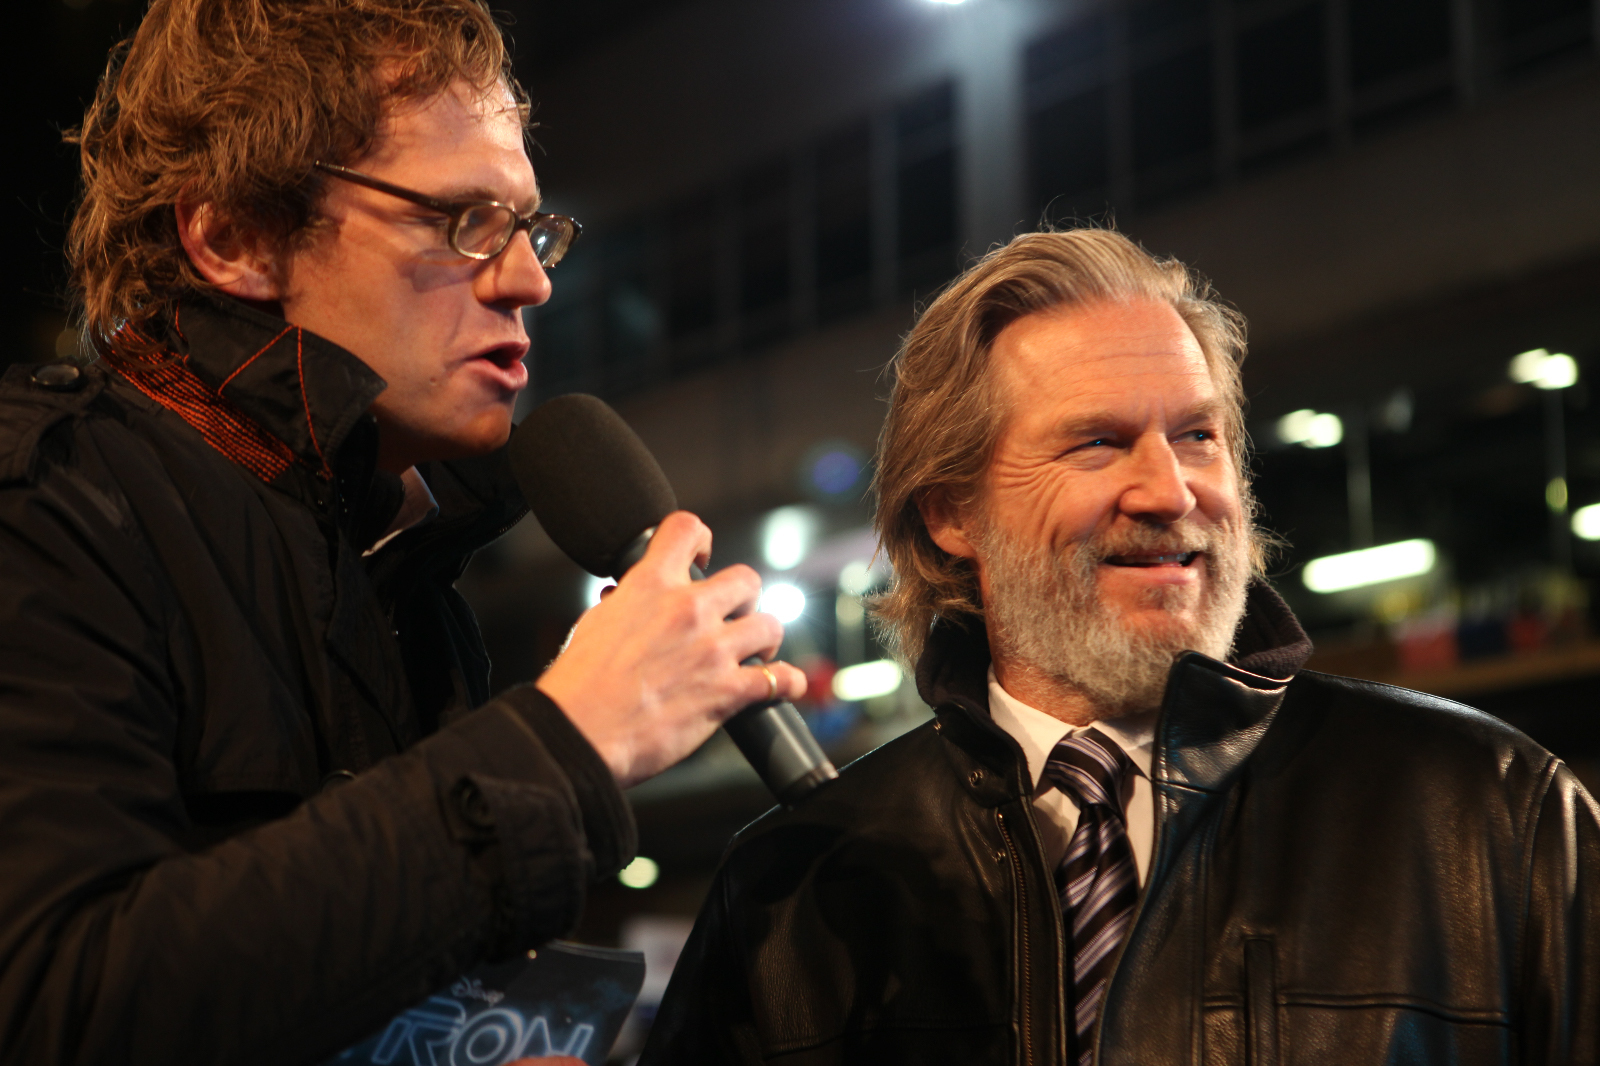 Jeff Bridges at event of Tronas: Palikimas (2010)